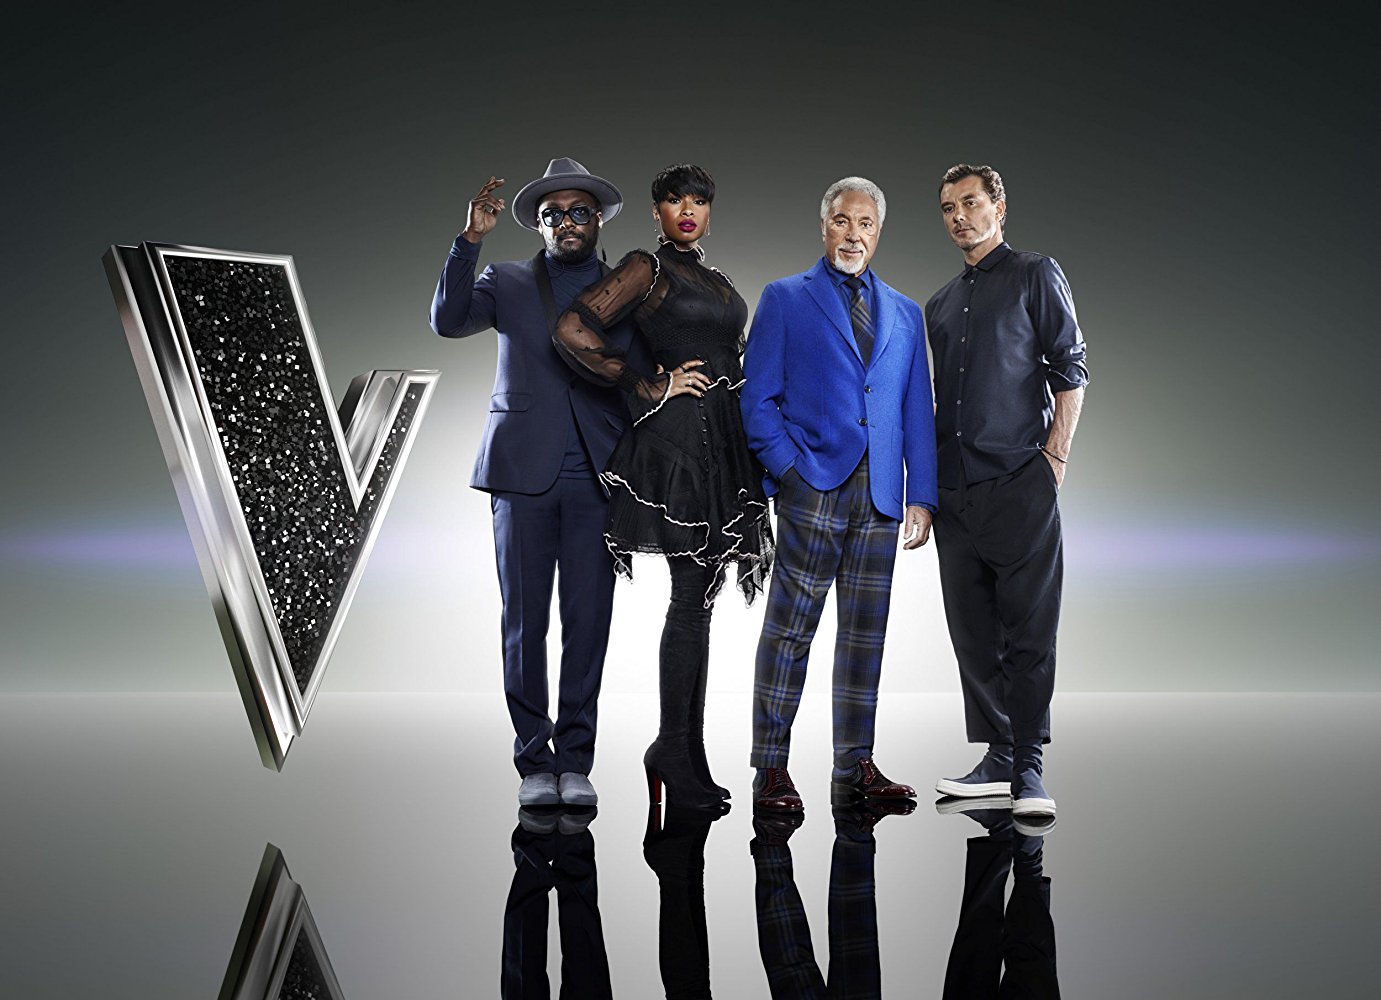 Watch The Voice UK - Season 9